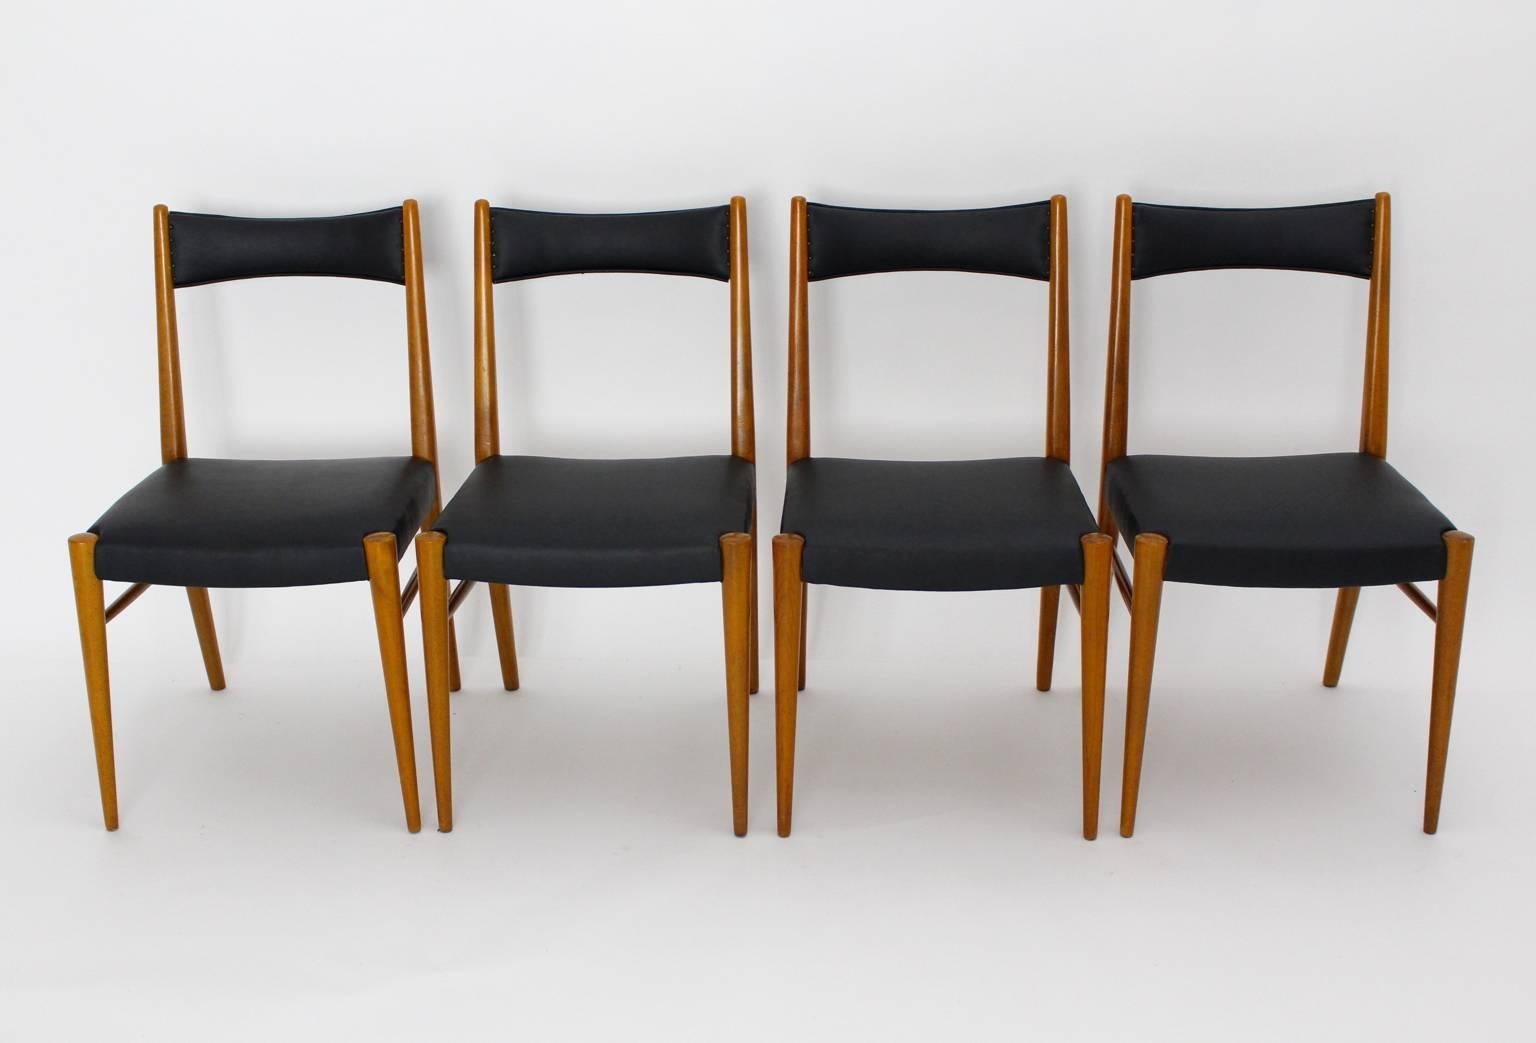 Mid Century Modern Satz von 4 Esszimmerstühlen entworfen von Anna-Lülja Praun 1953 Wien.
Anna-Lülja Praun (1906-2004)
Das Gestell des Stuhls wurde aus Buchenholz gefertigt, während die Sitzfläche und die Rückenlehne mit schwarzem Kunstleder und